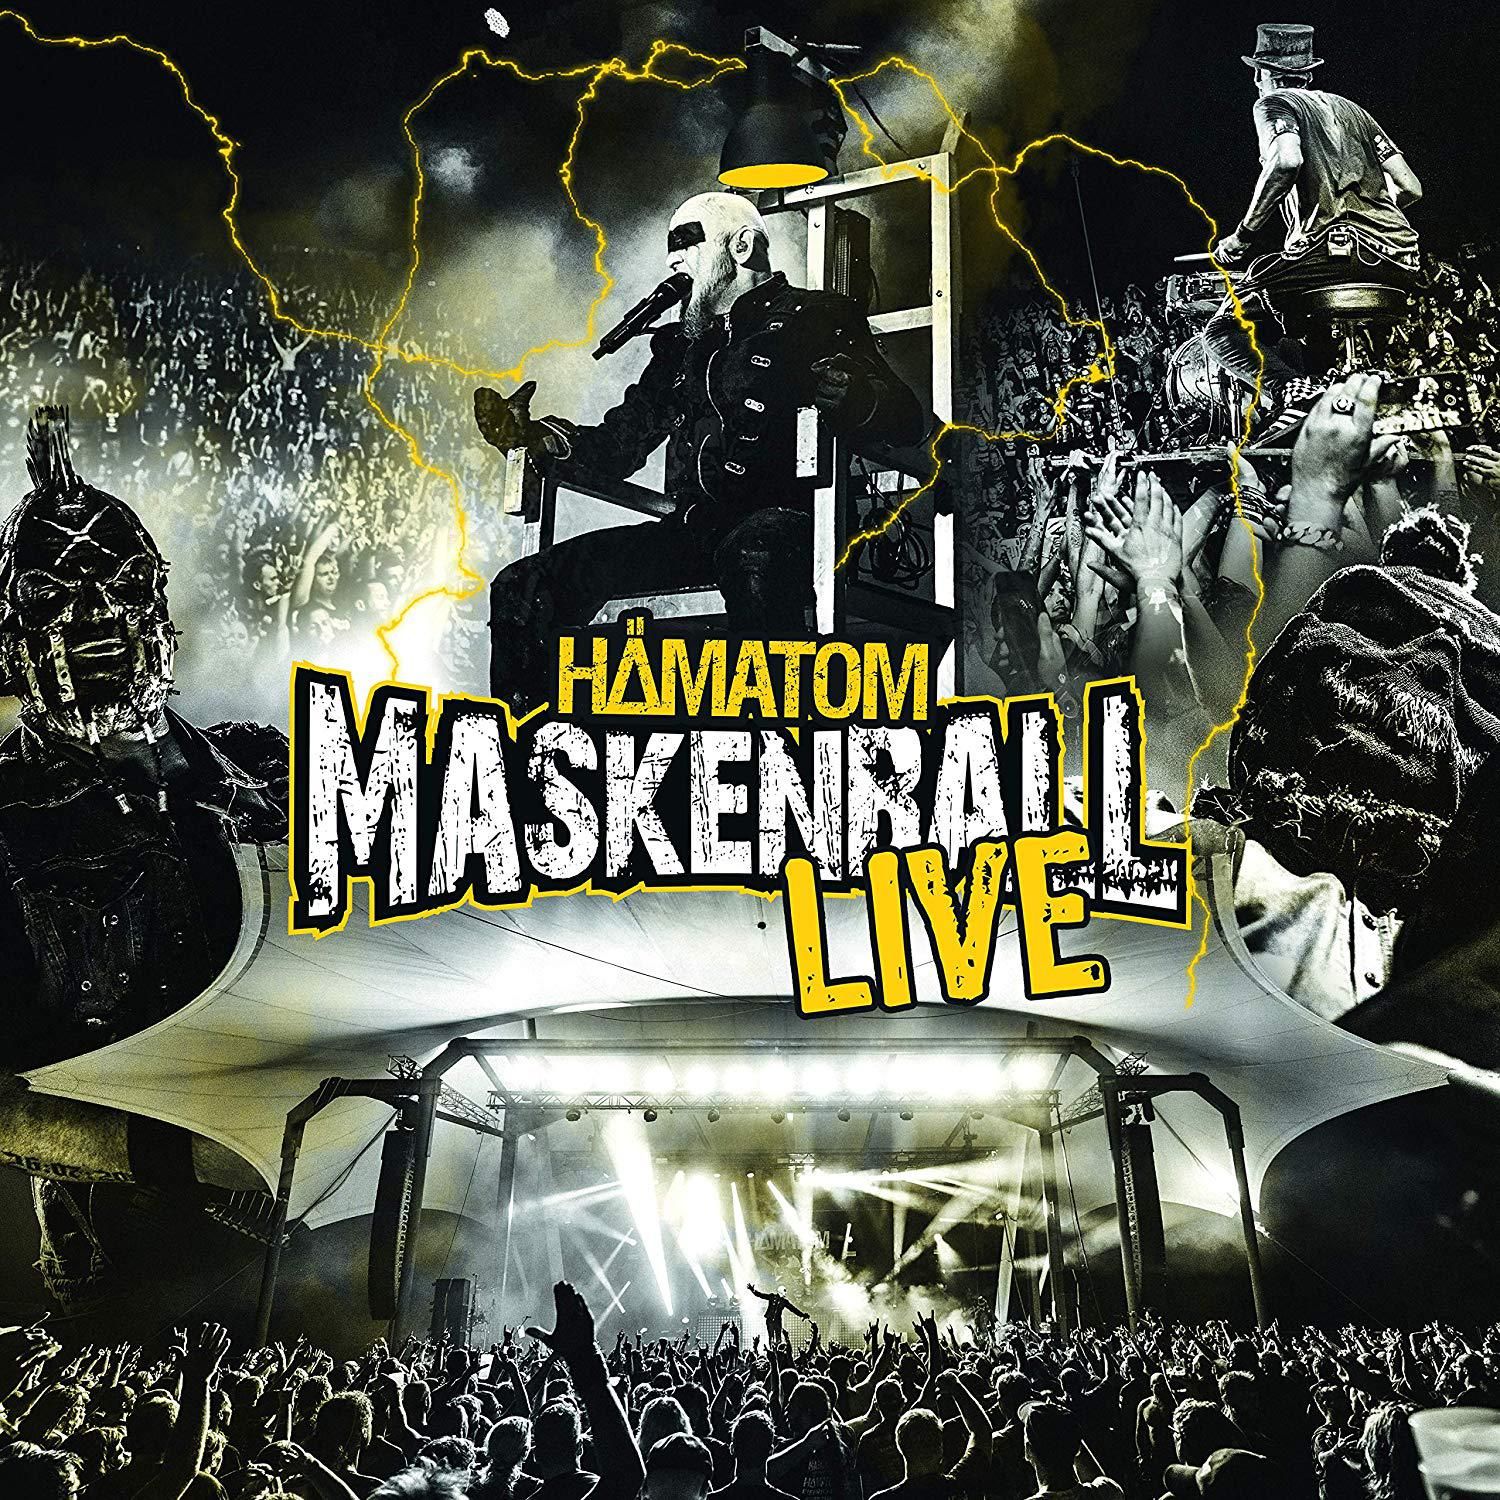 'Engel lügen doch'-Video zum "Maskenball Live"-Album veröffentlicht